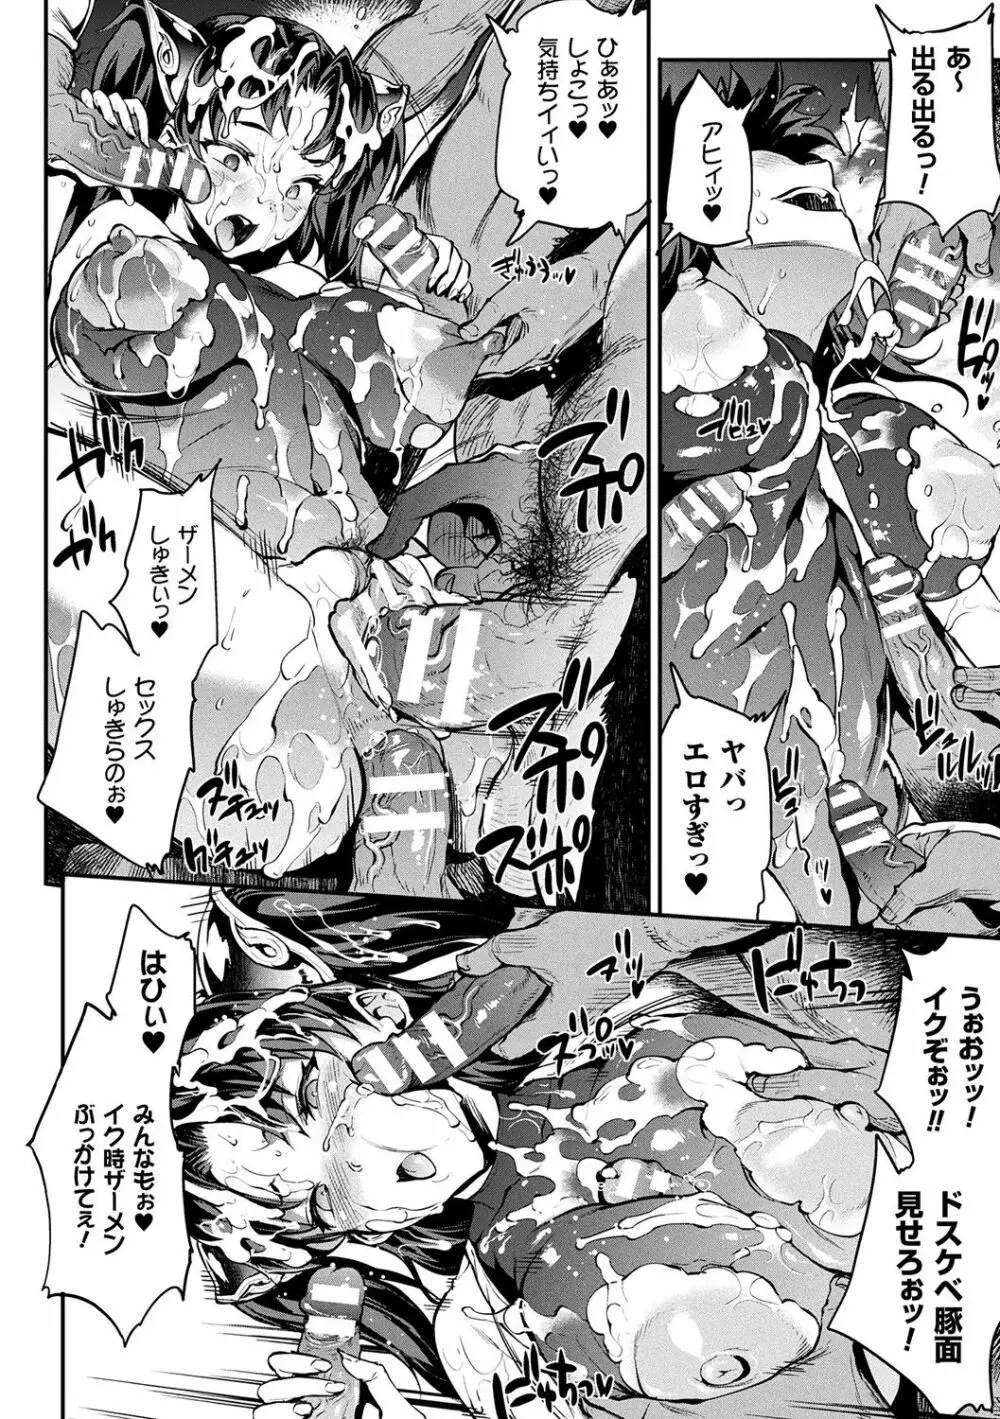 [エレクトさわる] 雷光神姫アイギスマギアII -PANDRA saga 3rd ignition- + 電子書籍特典デジタルポスター [DL版] 92ページ